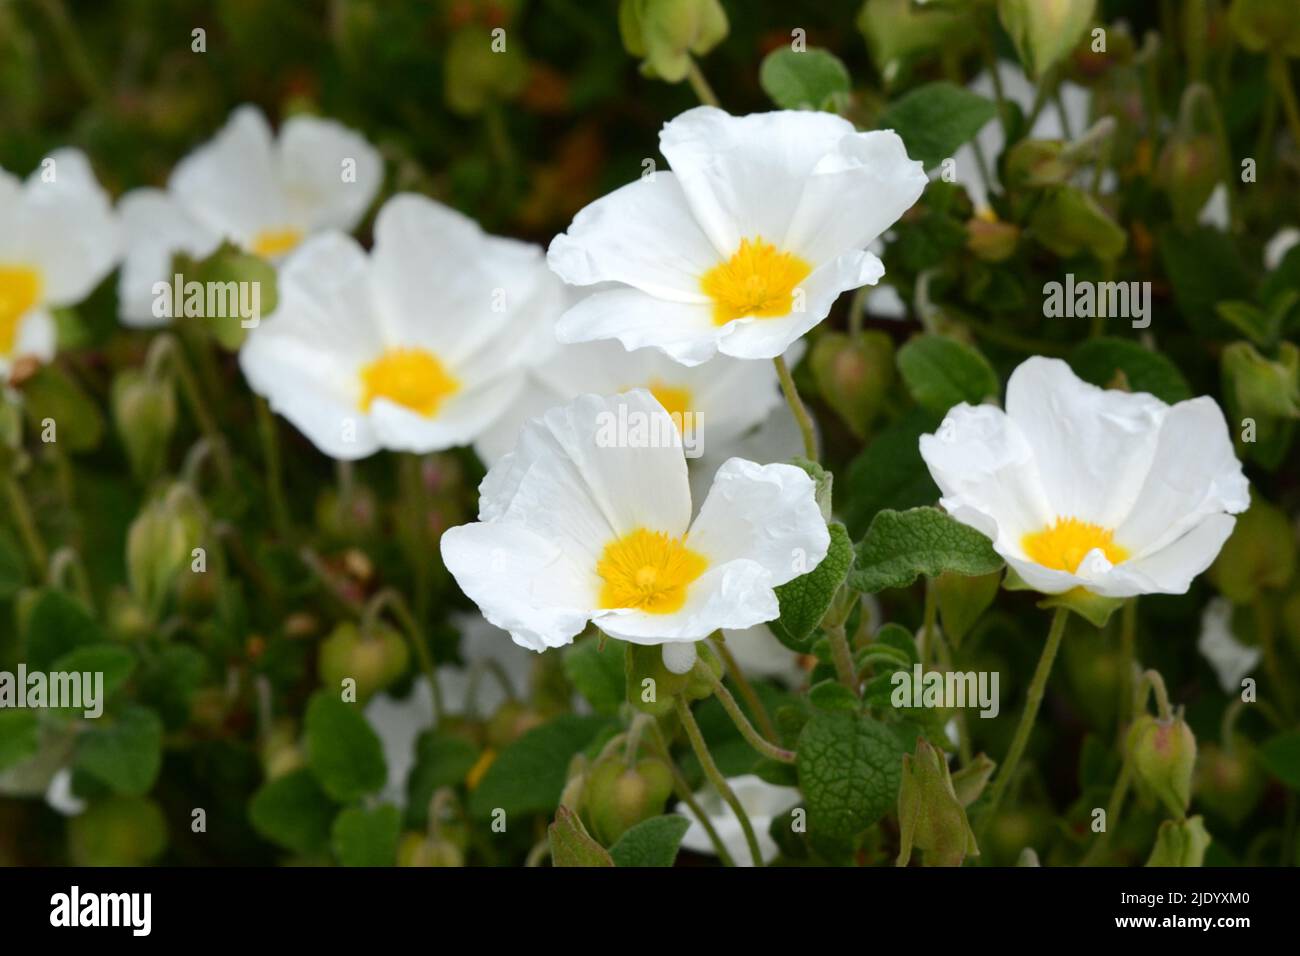 Cistus salviolus Sage-leaved rock rose Salvia cistus profuse snowy white flowers with yellow stamens Stock Photo